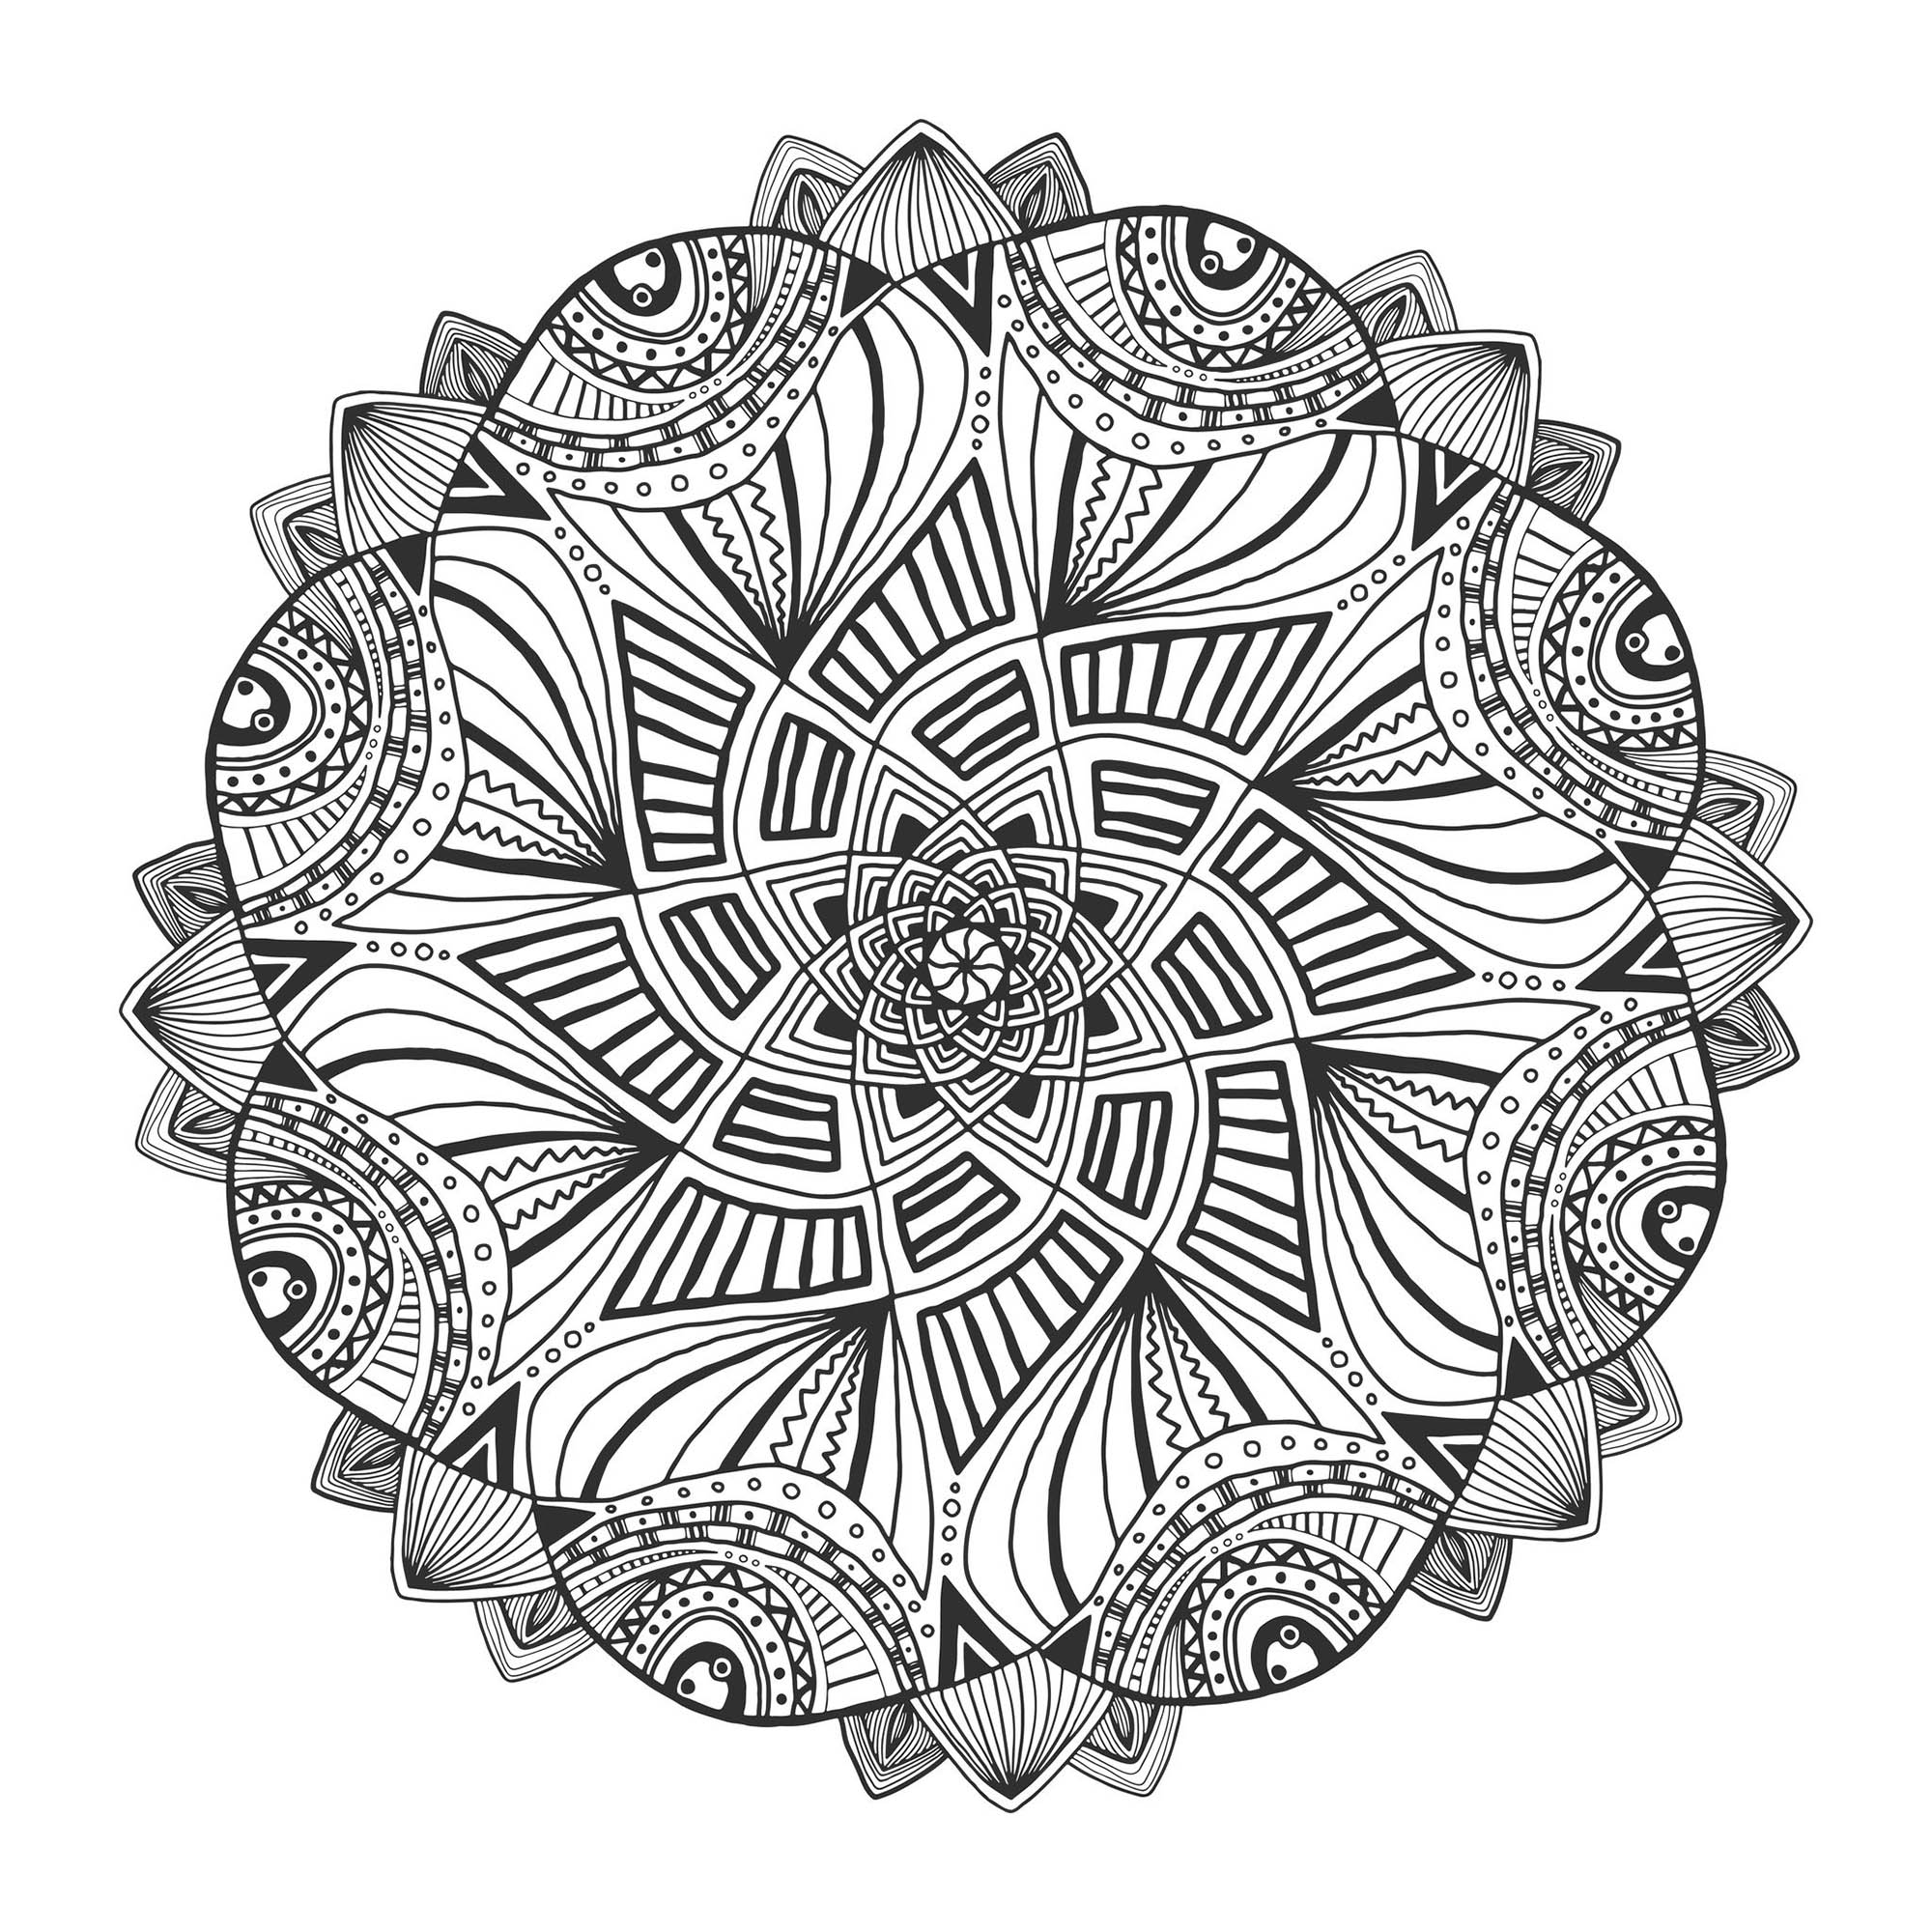 Mandala floral ornamental. Padrão de ornamento decorativo, Fonte : 123rf   Artista : worldion